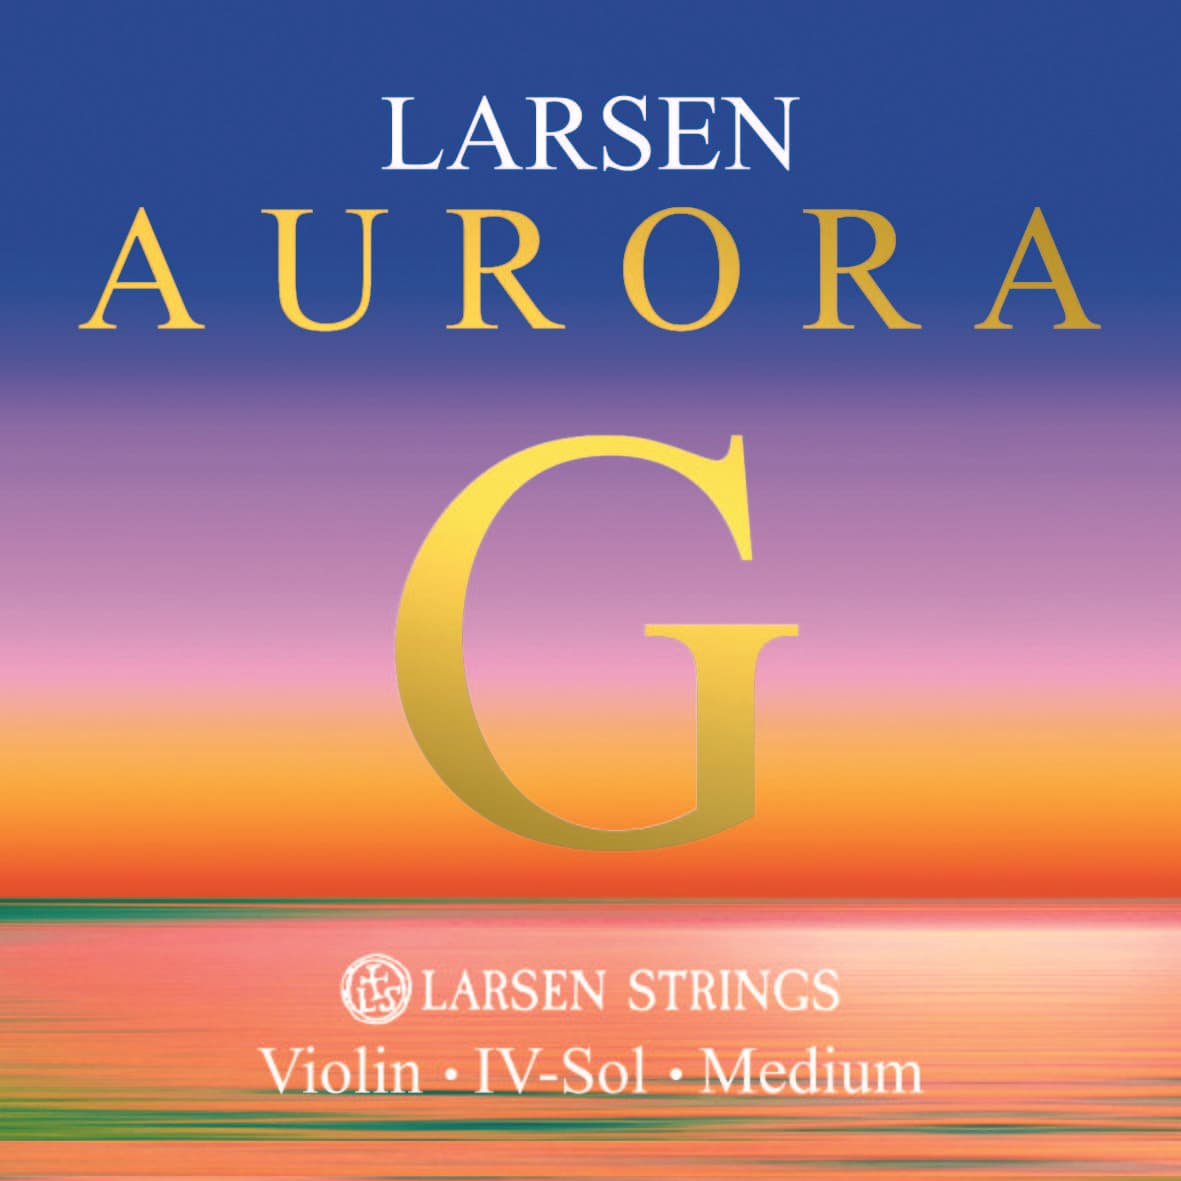 Larsen Aurora Violin G String